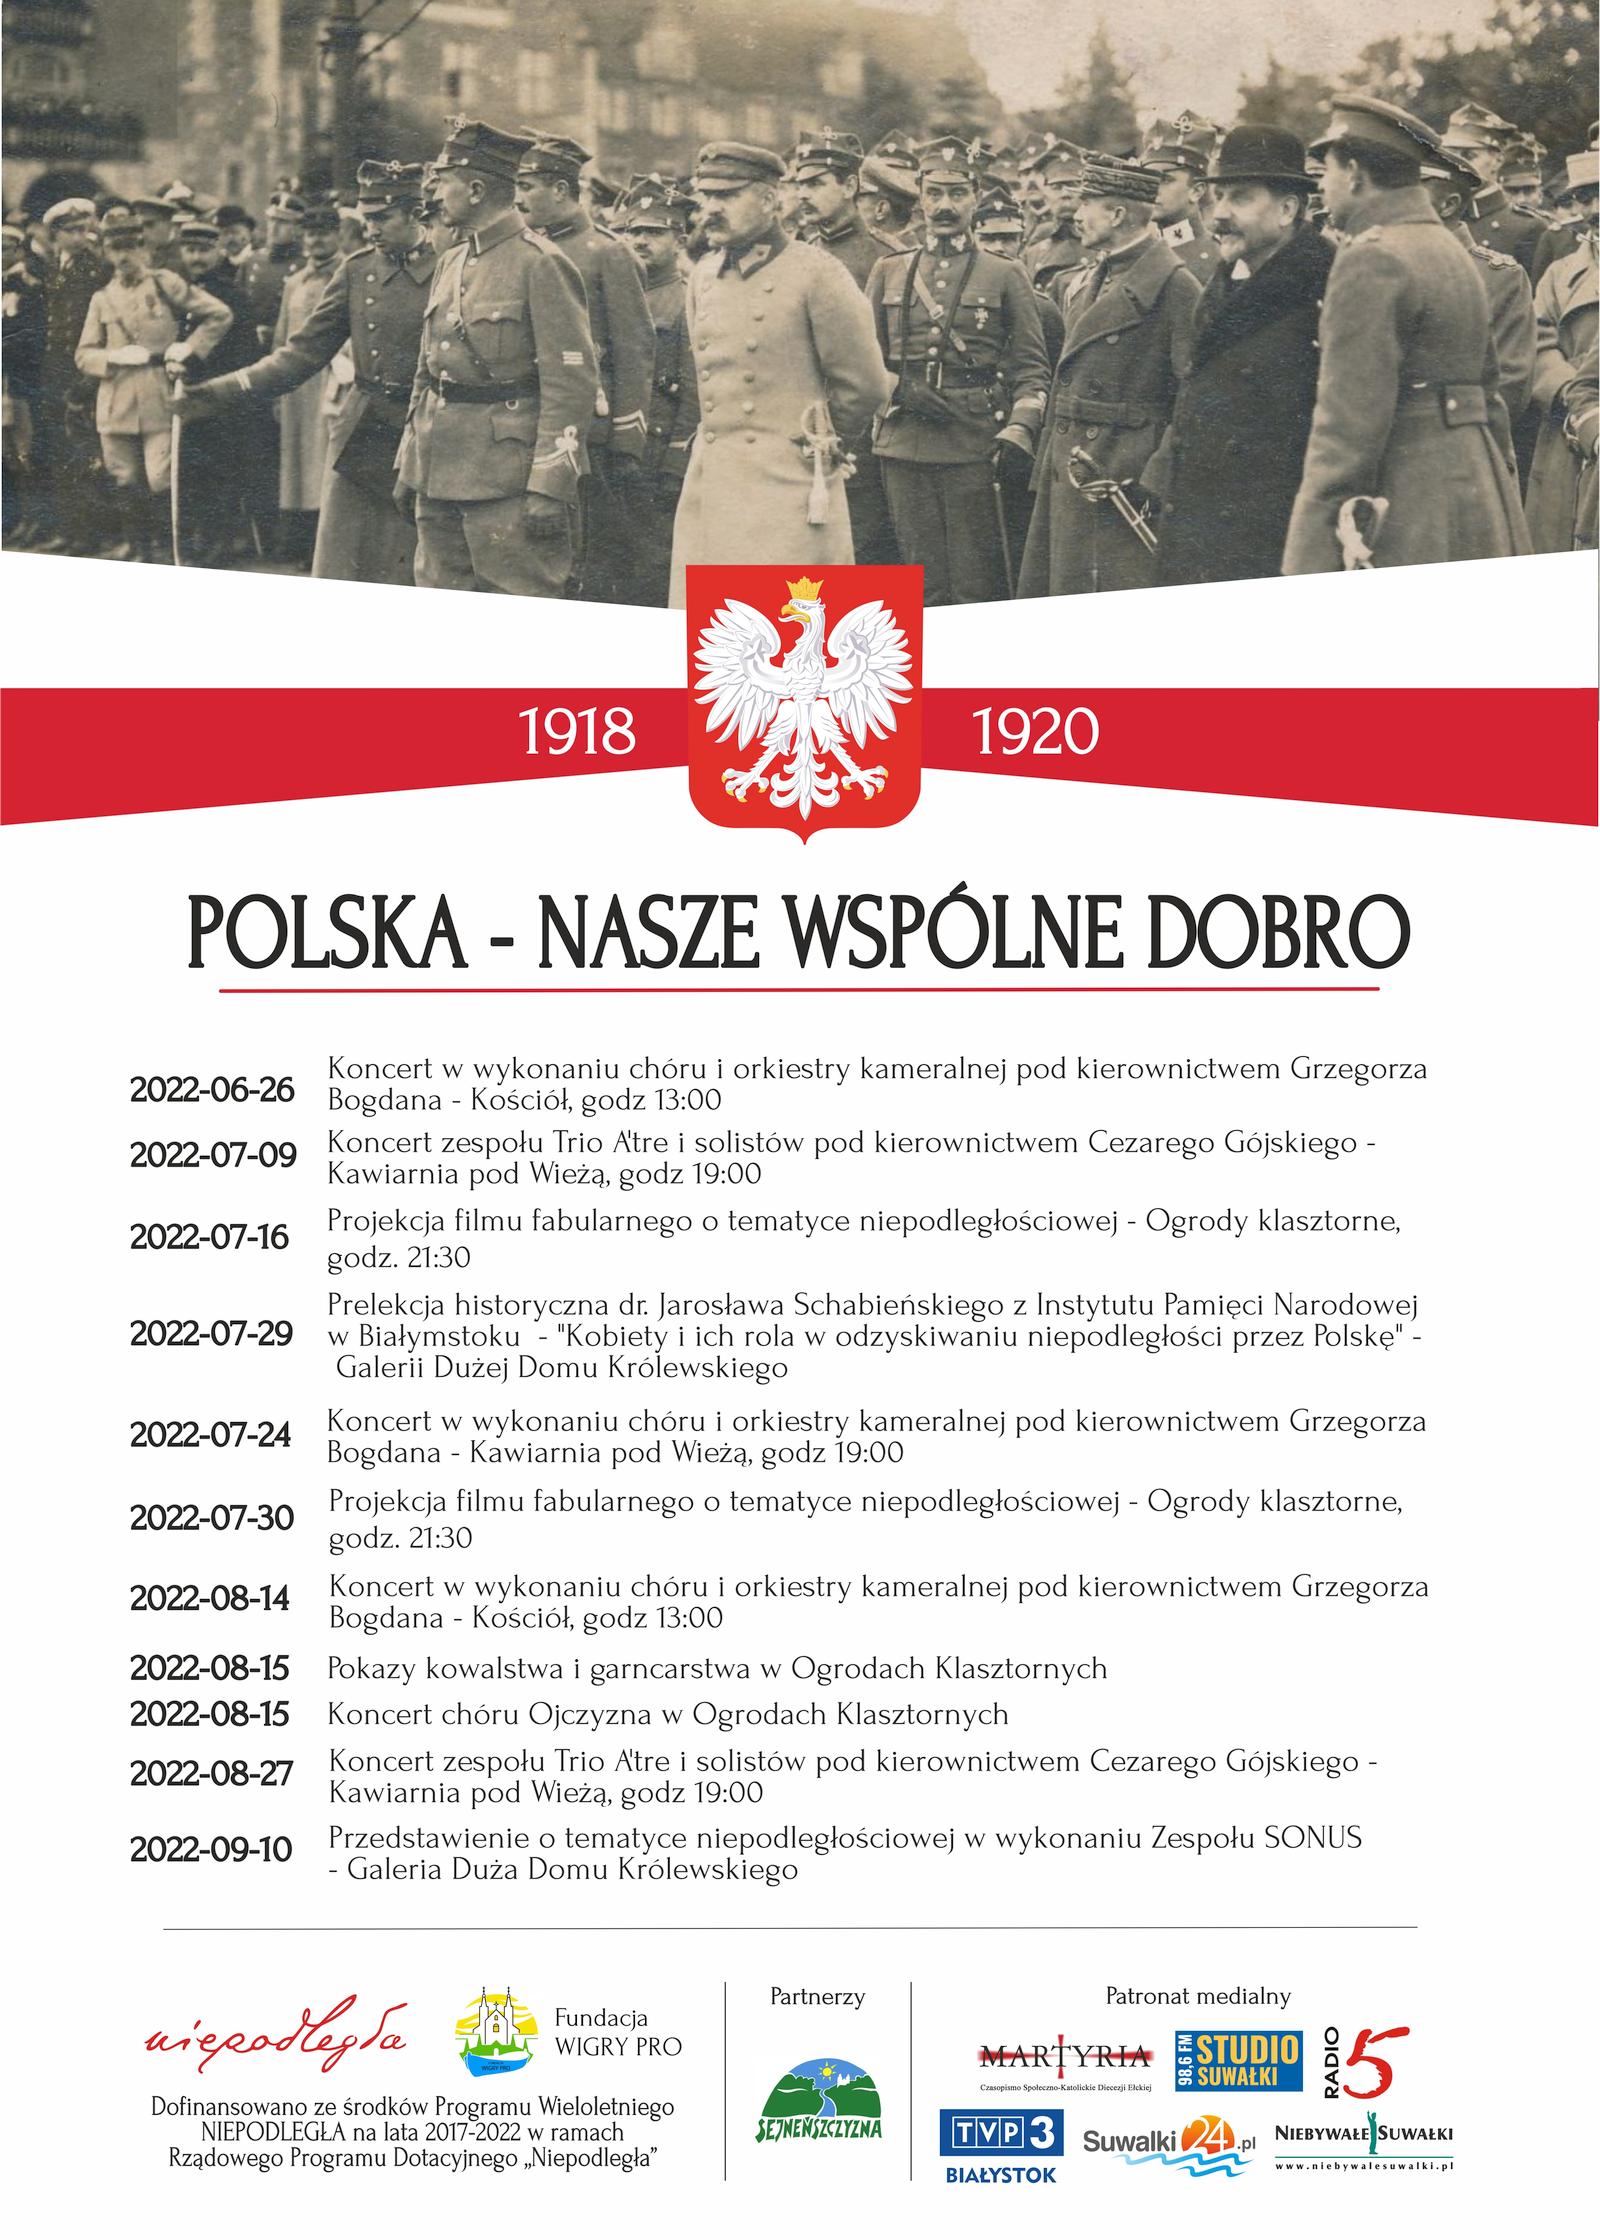 "Polska - nasze wspólne dobro" projekt w ramach Programu Wieloletniego NIEPODLEGŁA